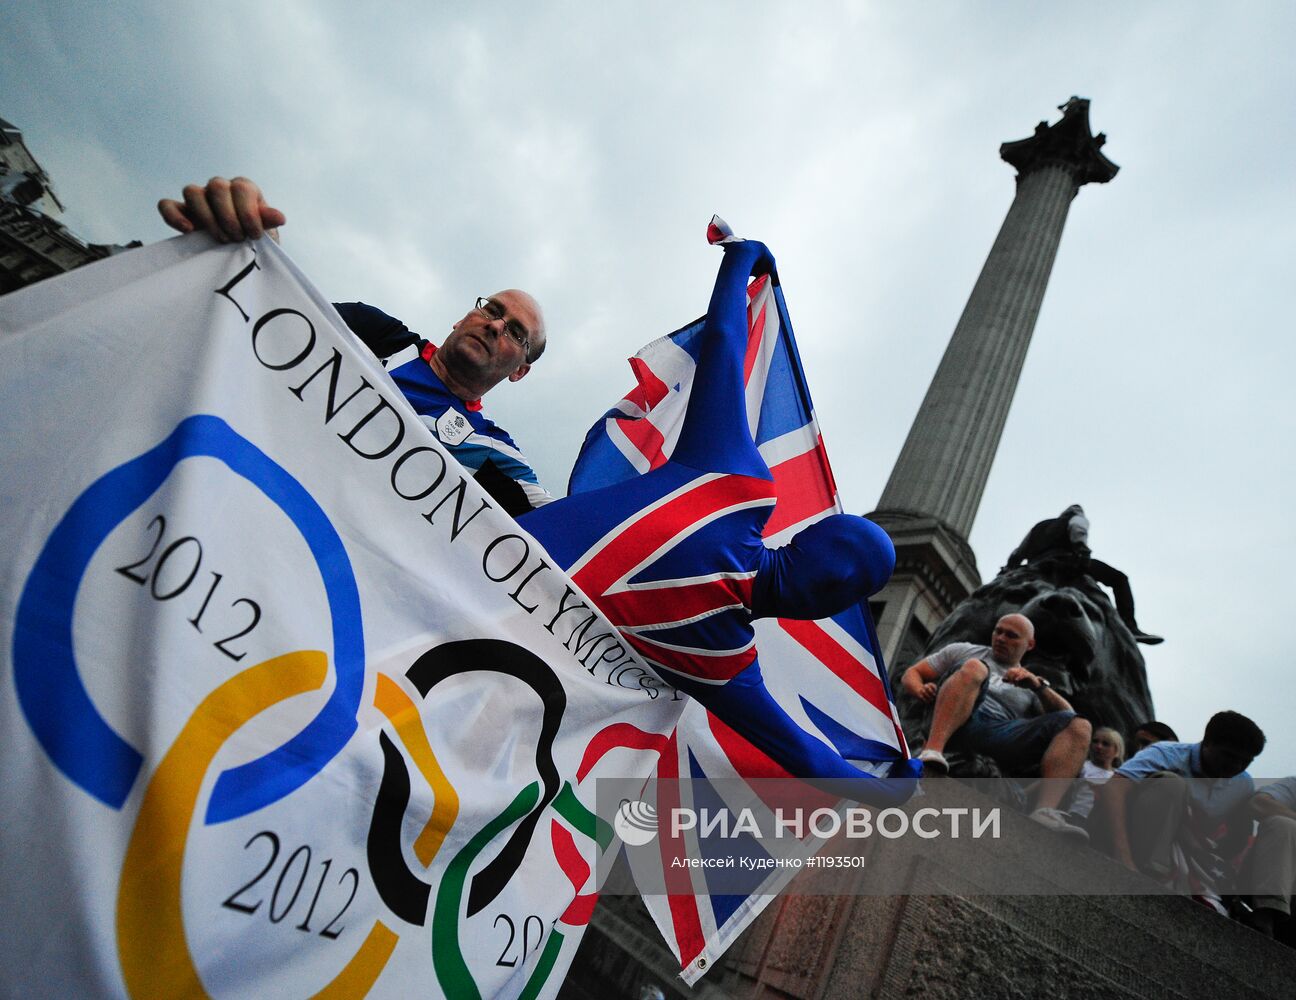 Лондон во время церемонии открытия Олимпийских игр